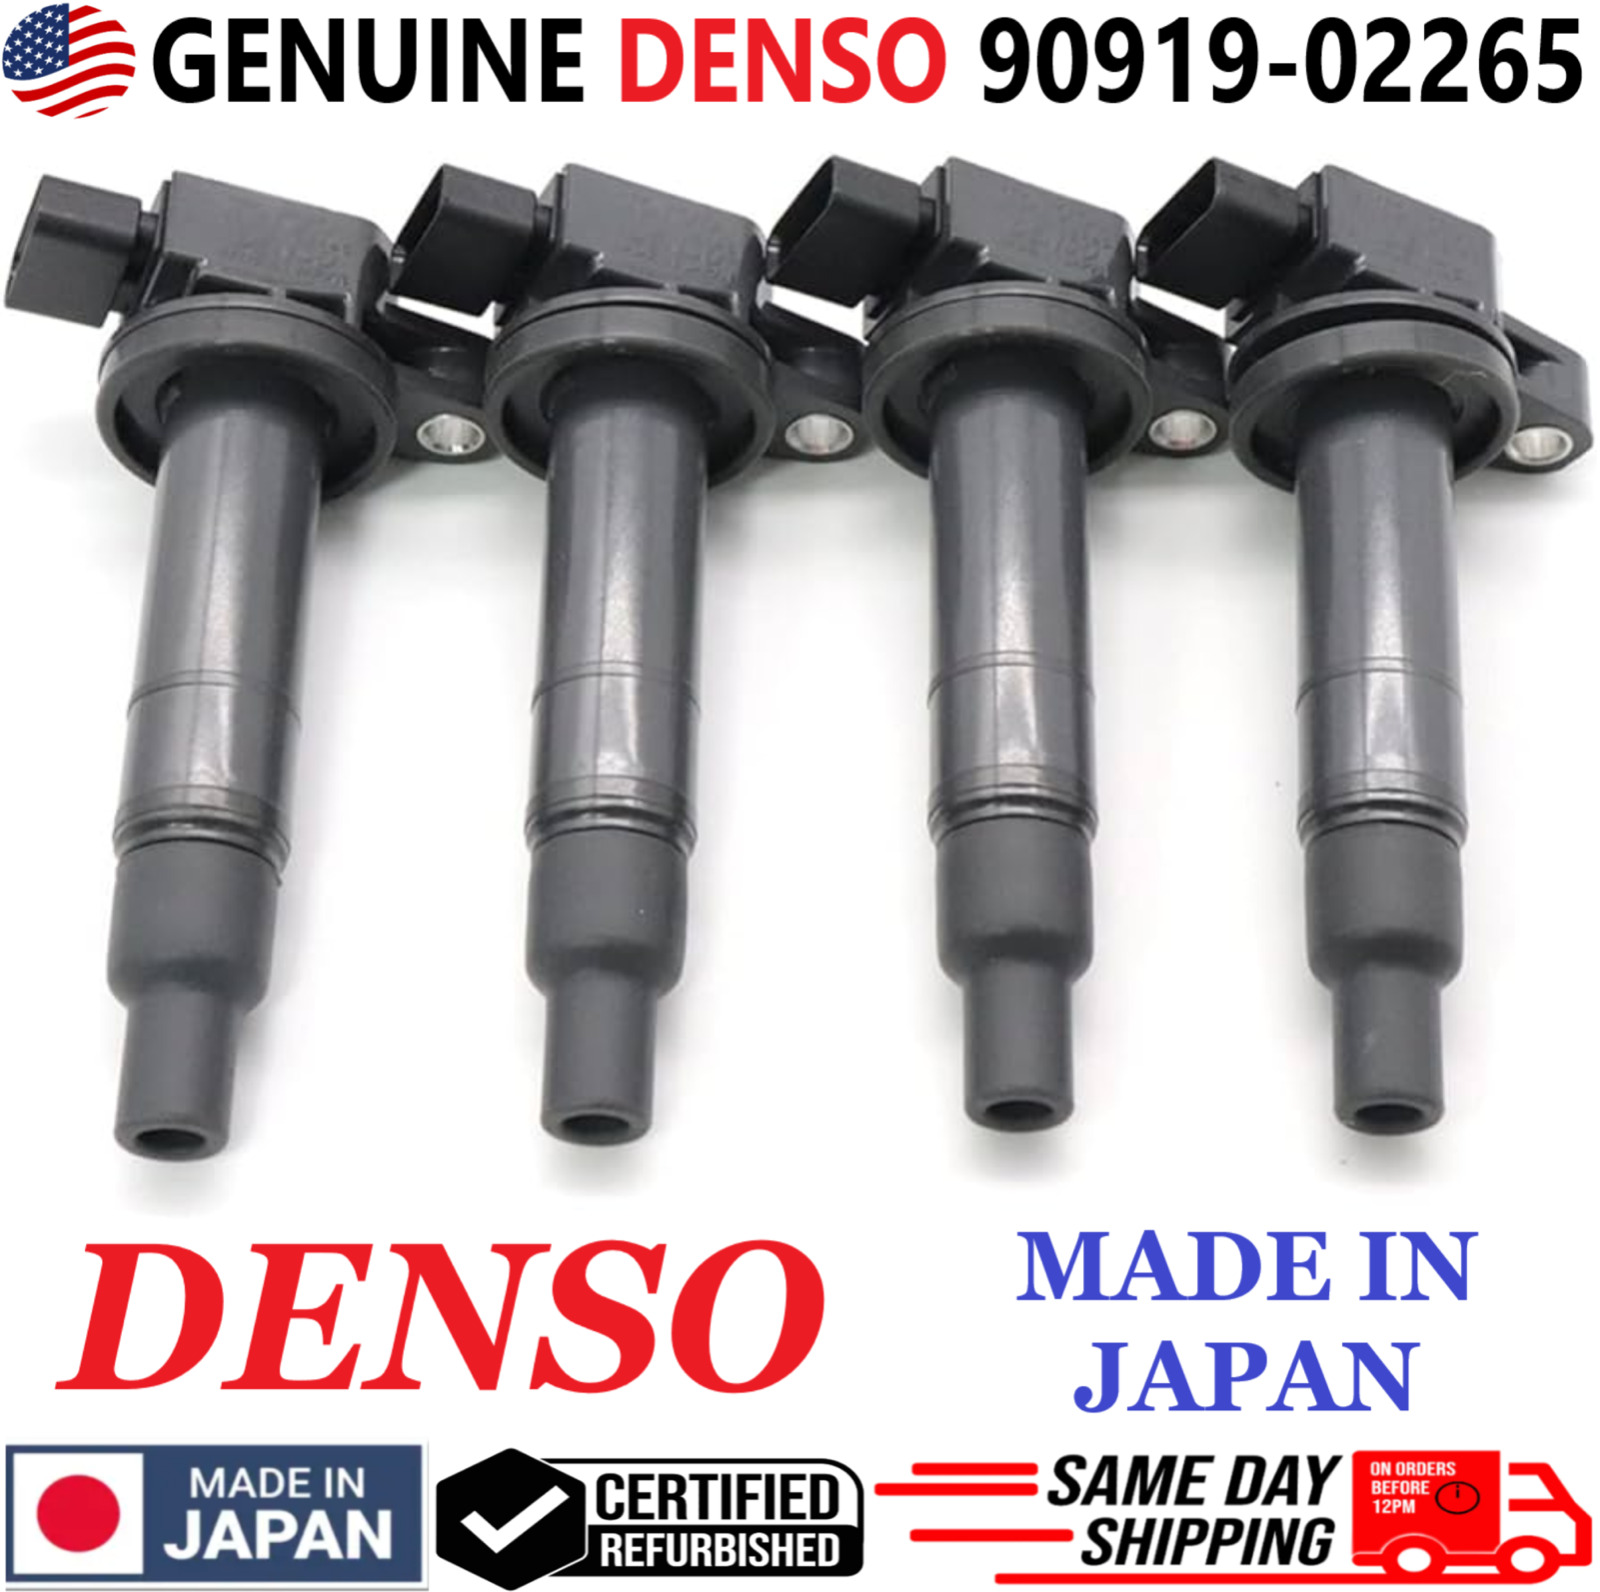 OEM GENUINE DENSO x4 Ignition Coils For 2000-2016 Toyota & Scion I4, 90919-02265